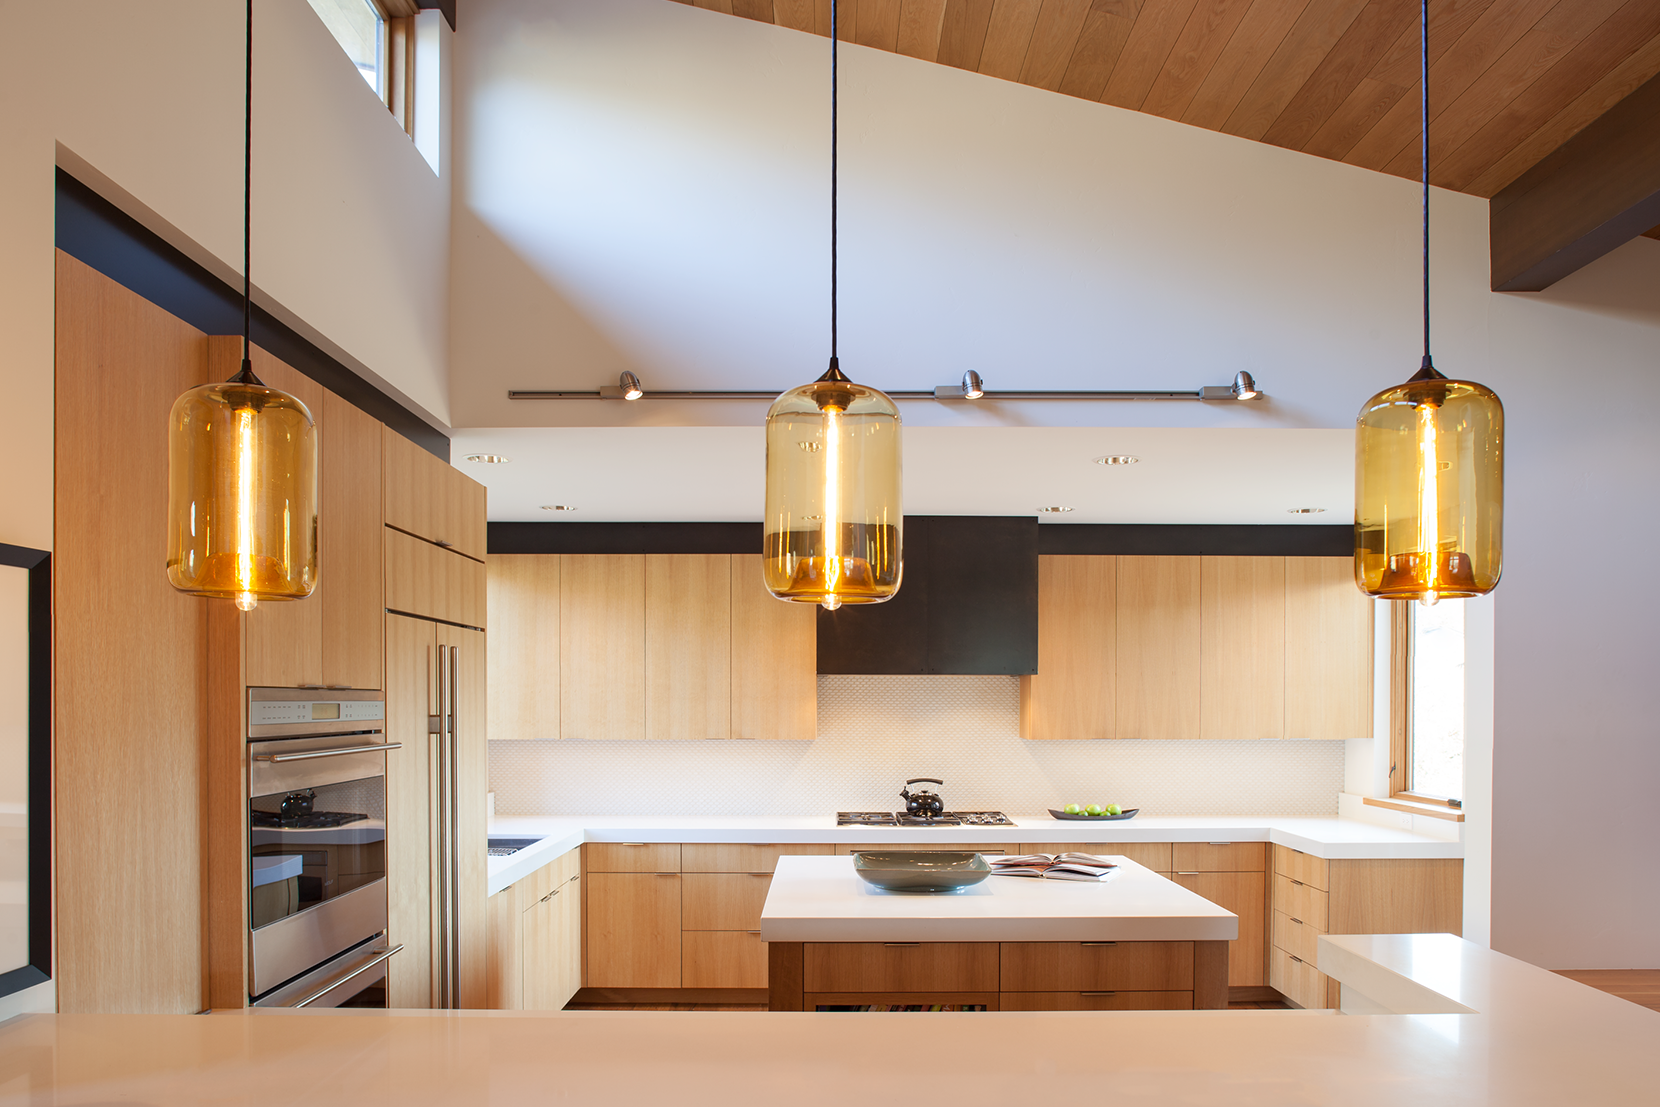 Modern Kitchen Lighting - Amber Pod Pendant Lights